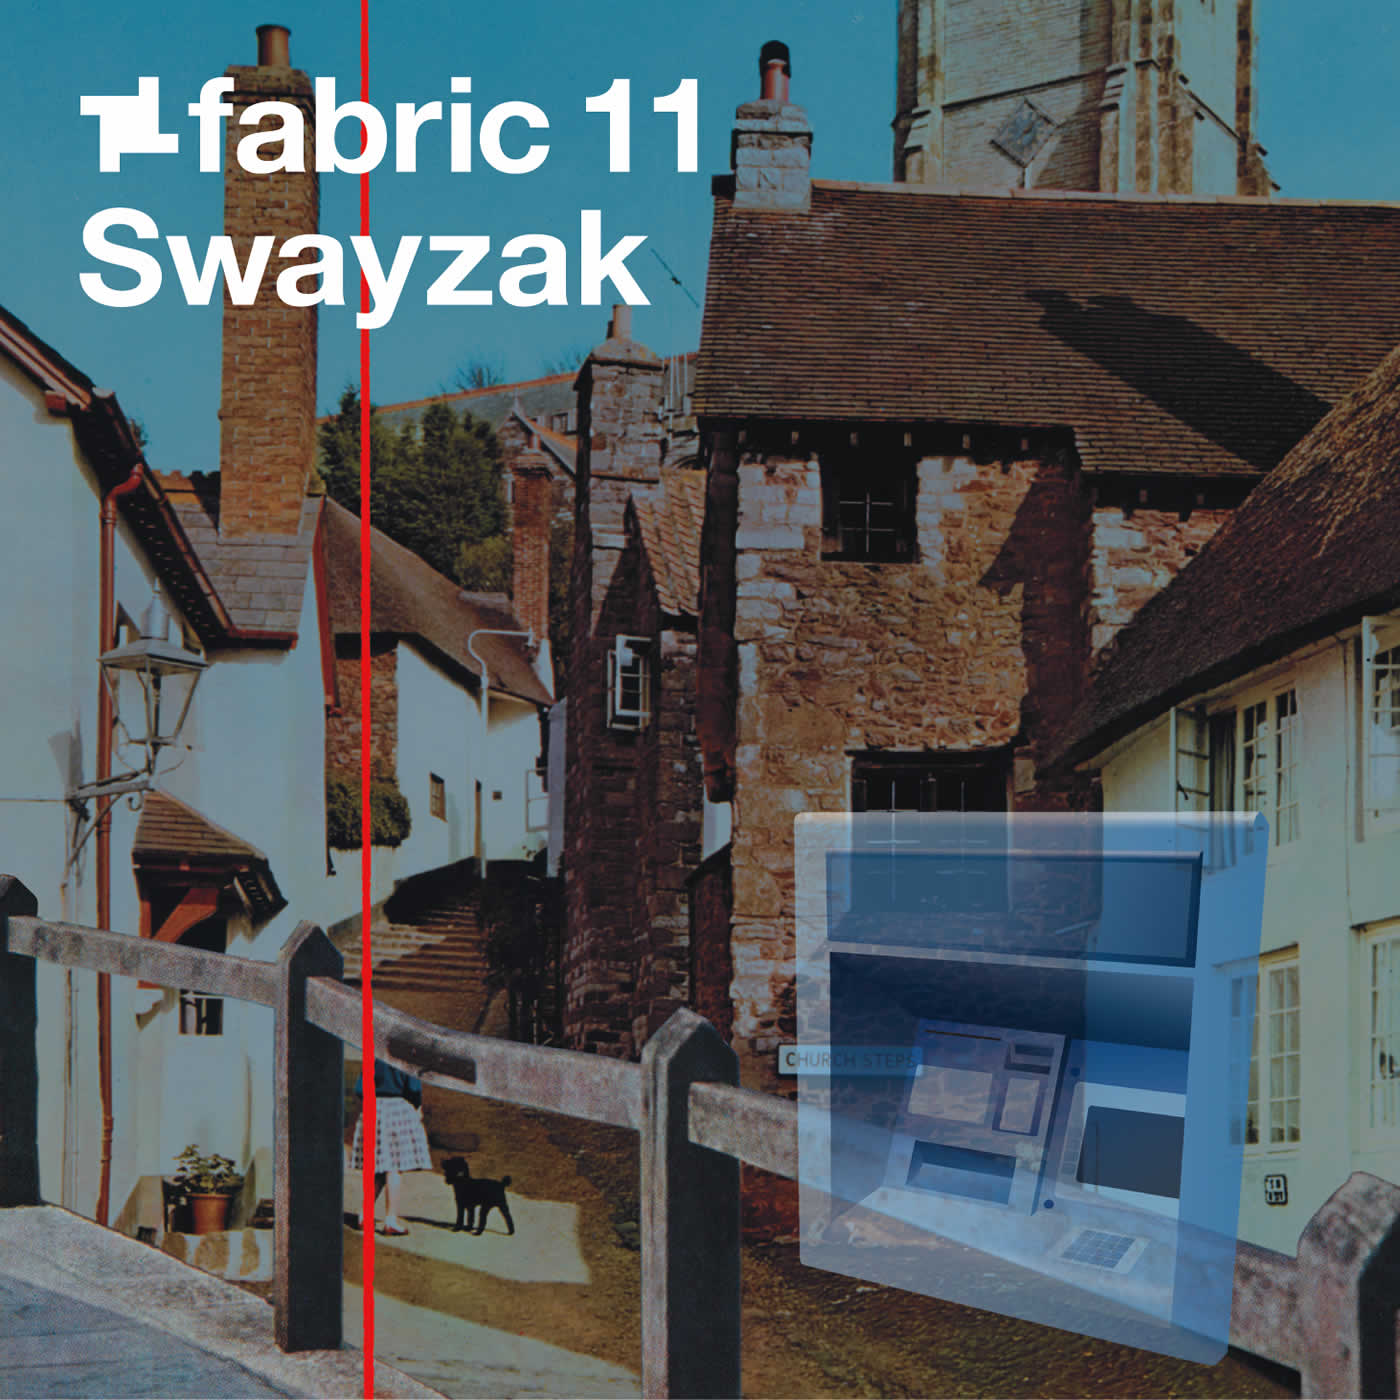 Swayzak - fabric 11